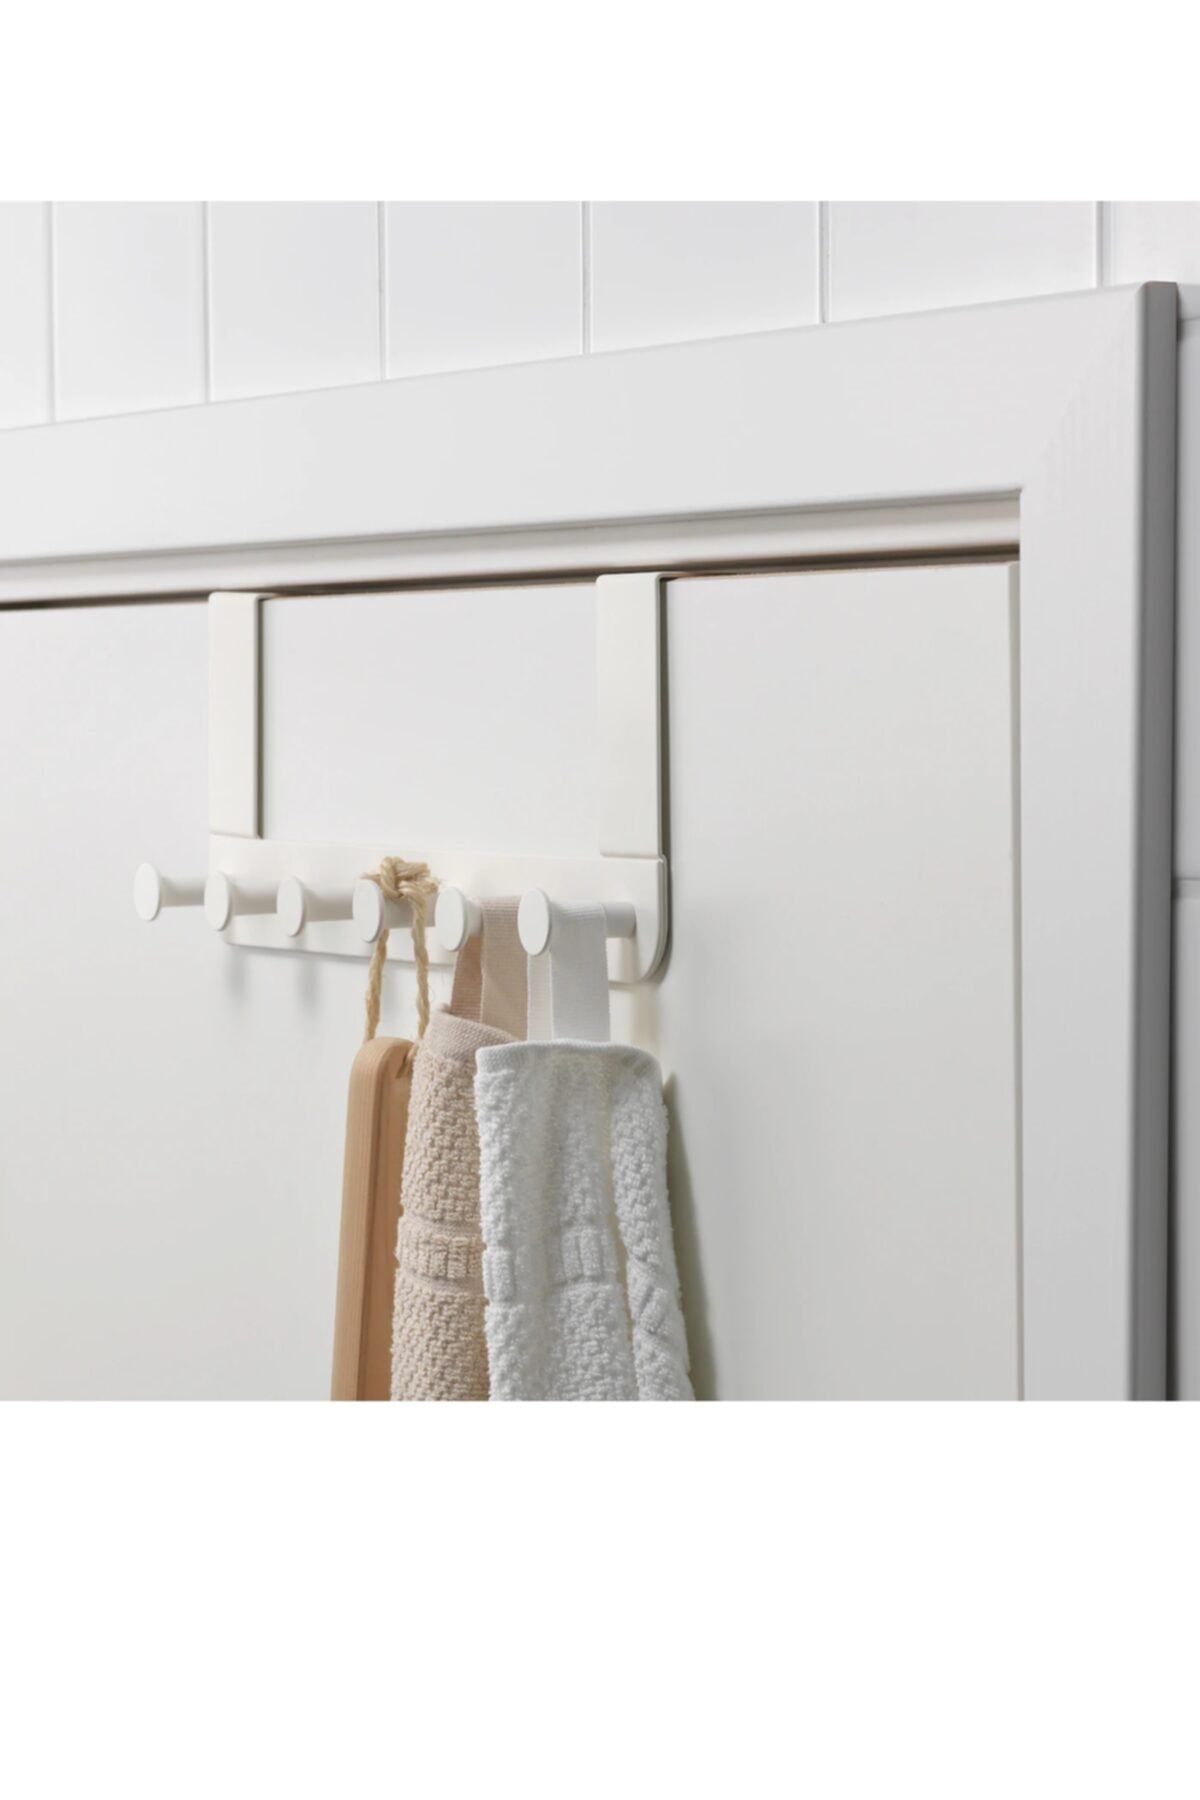 ENUDDEN Hanger for door - white